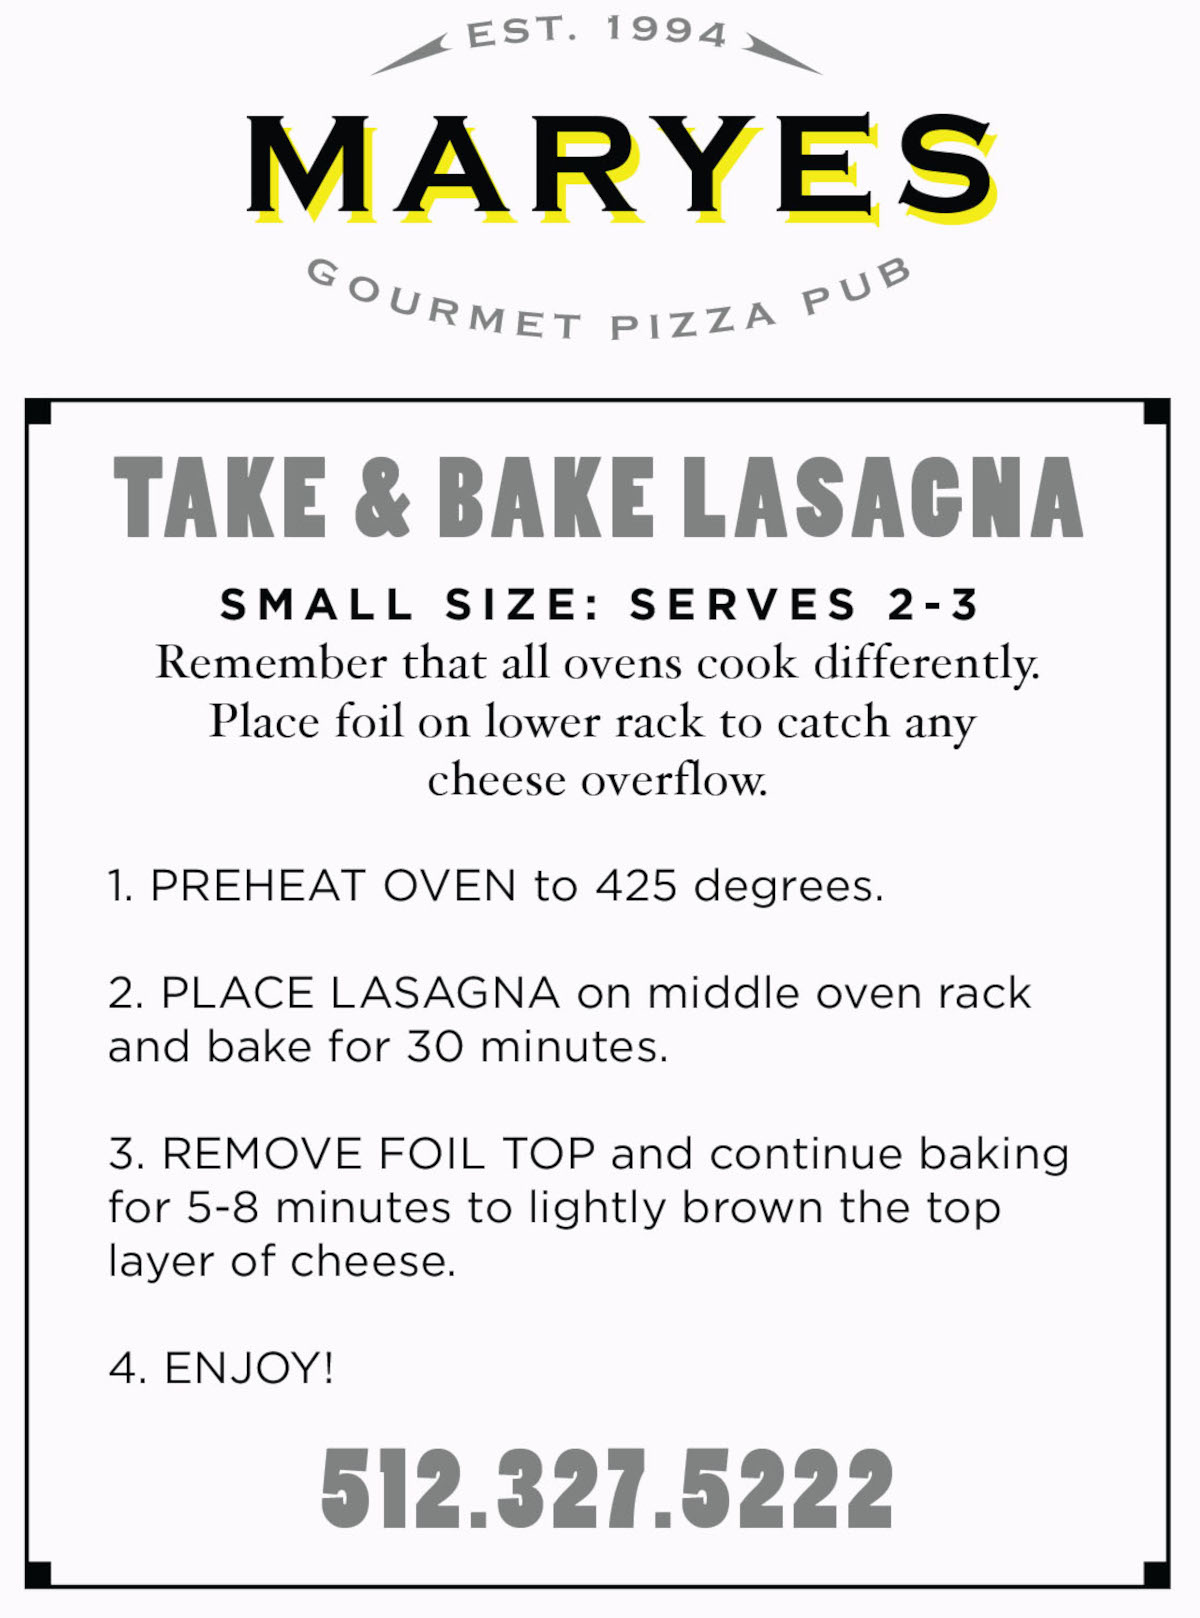 Take & Bake Lasagna Small